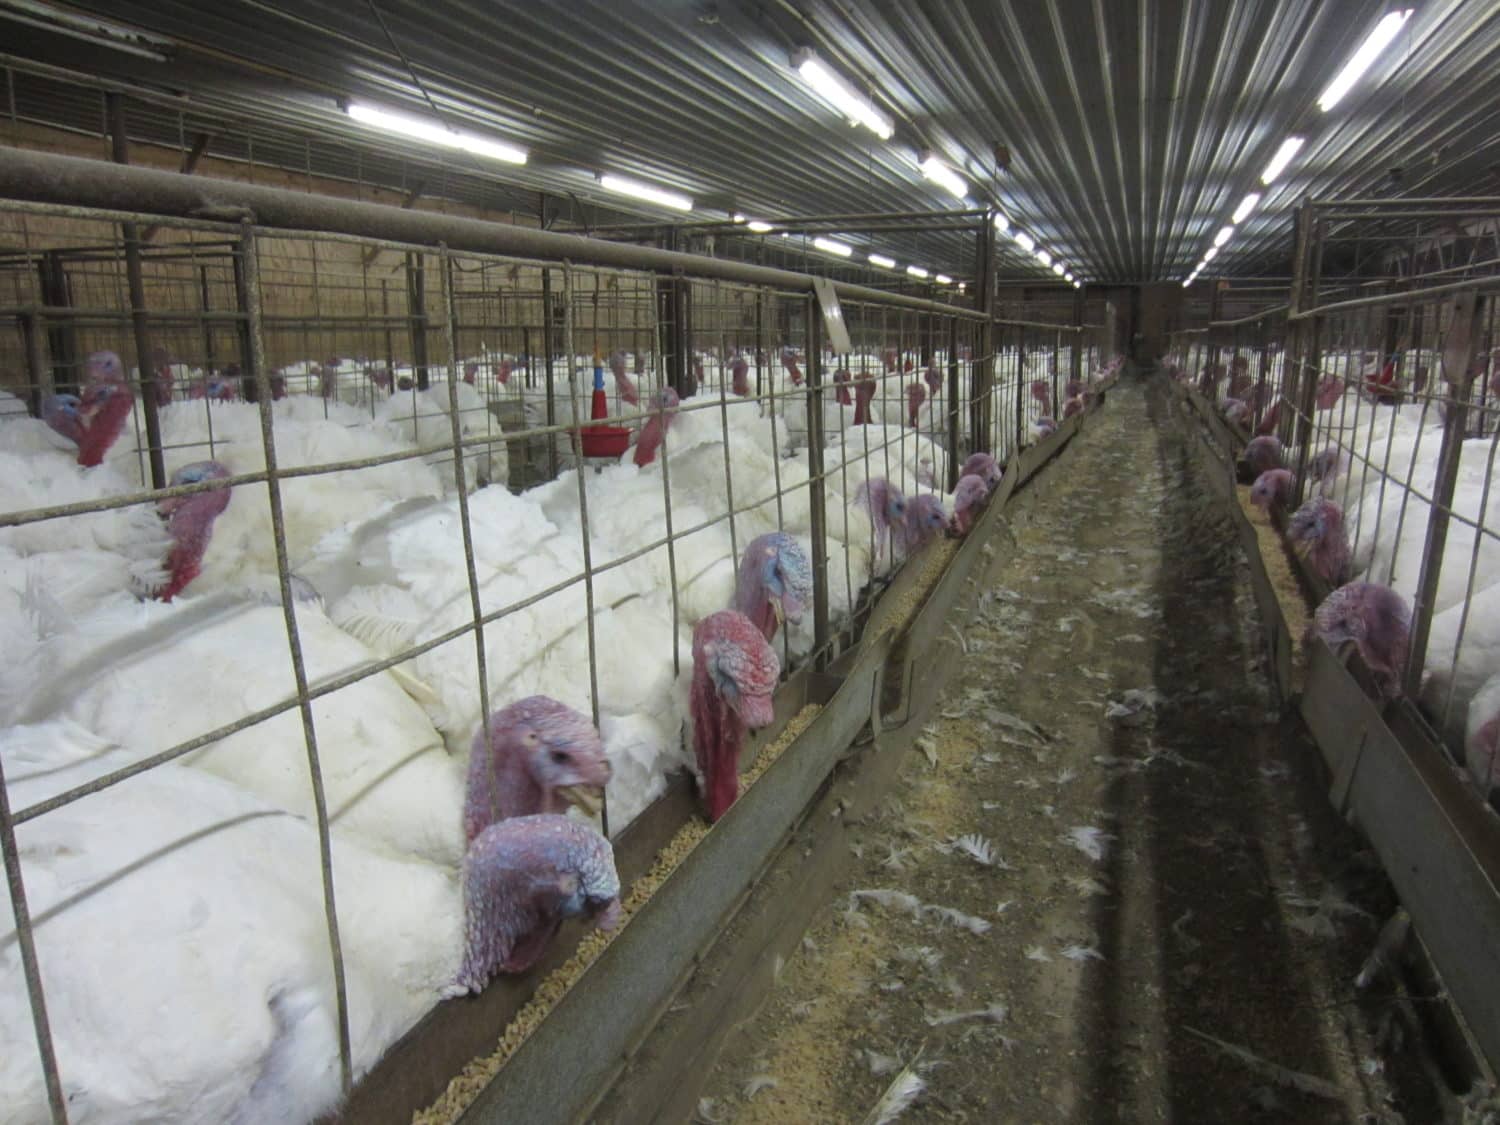 Turkeys in side a factory farm